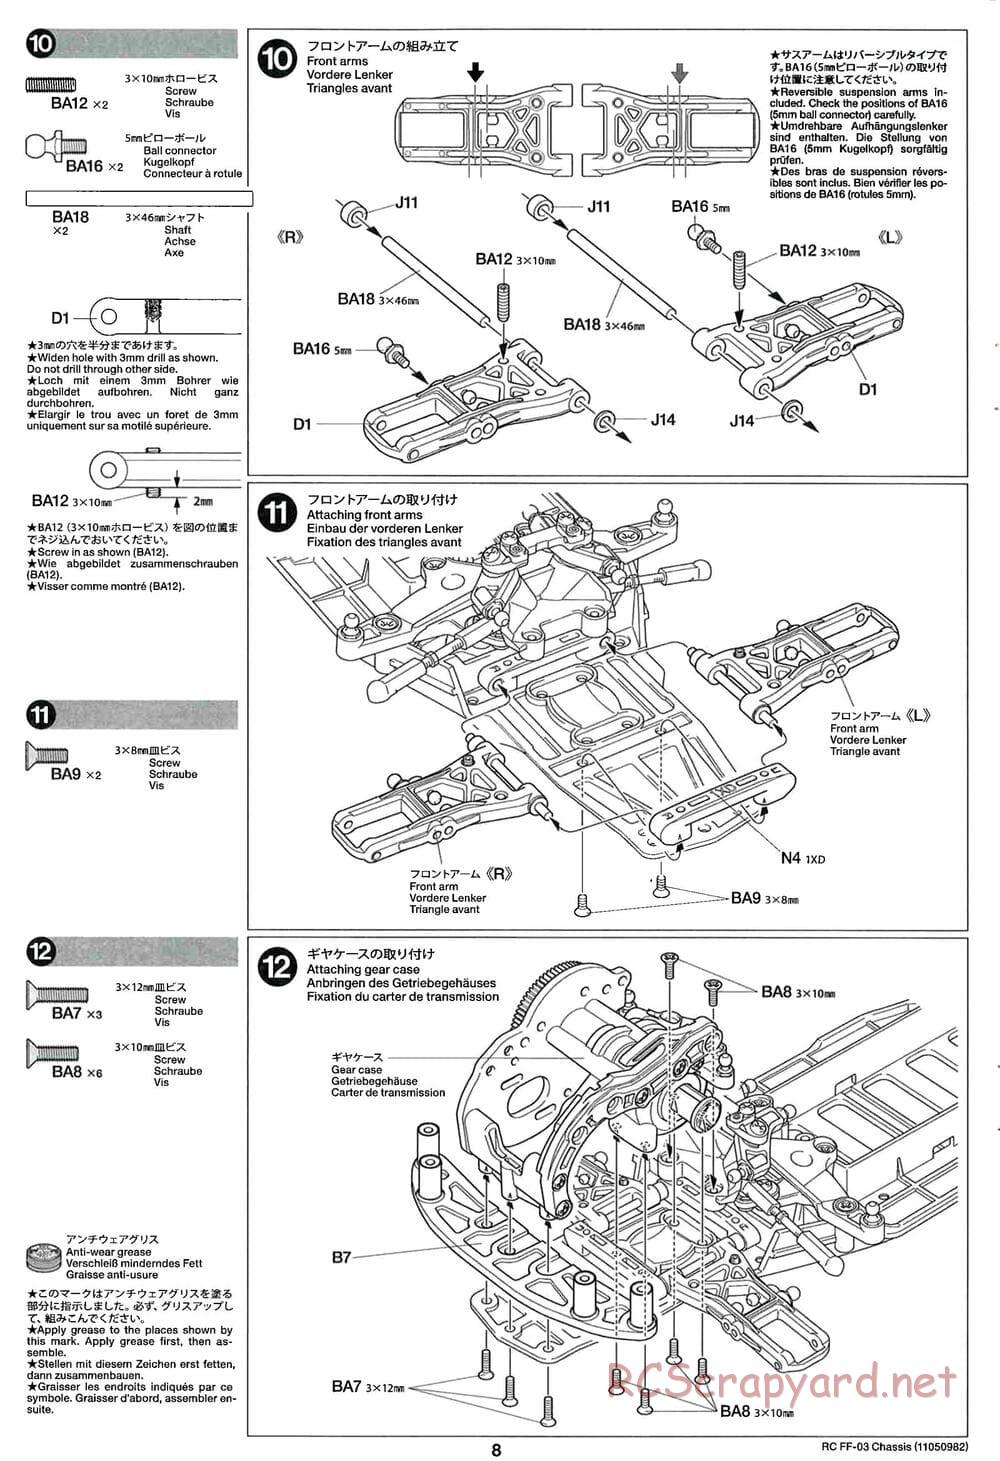 Tamiya - Honda Accord Aero Custom - FF-03 Chassis - Manual - Page 8